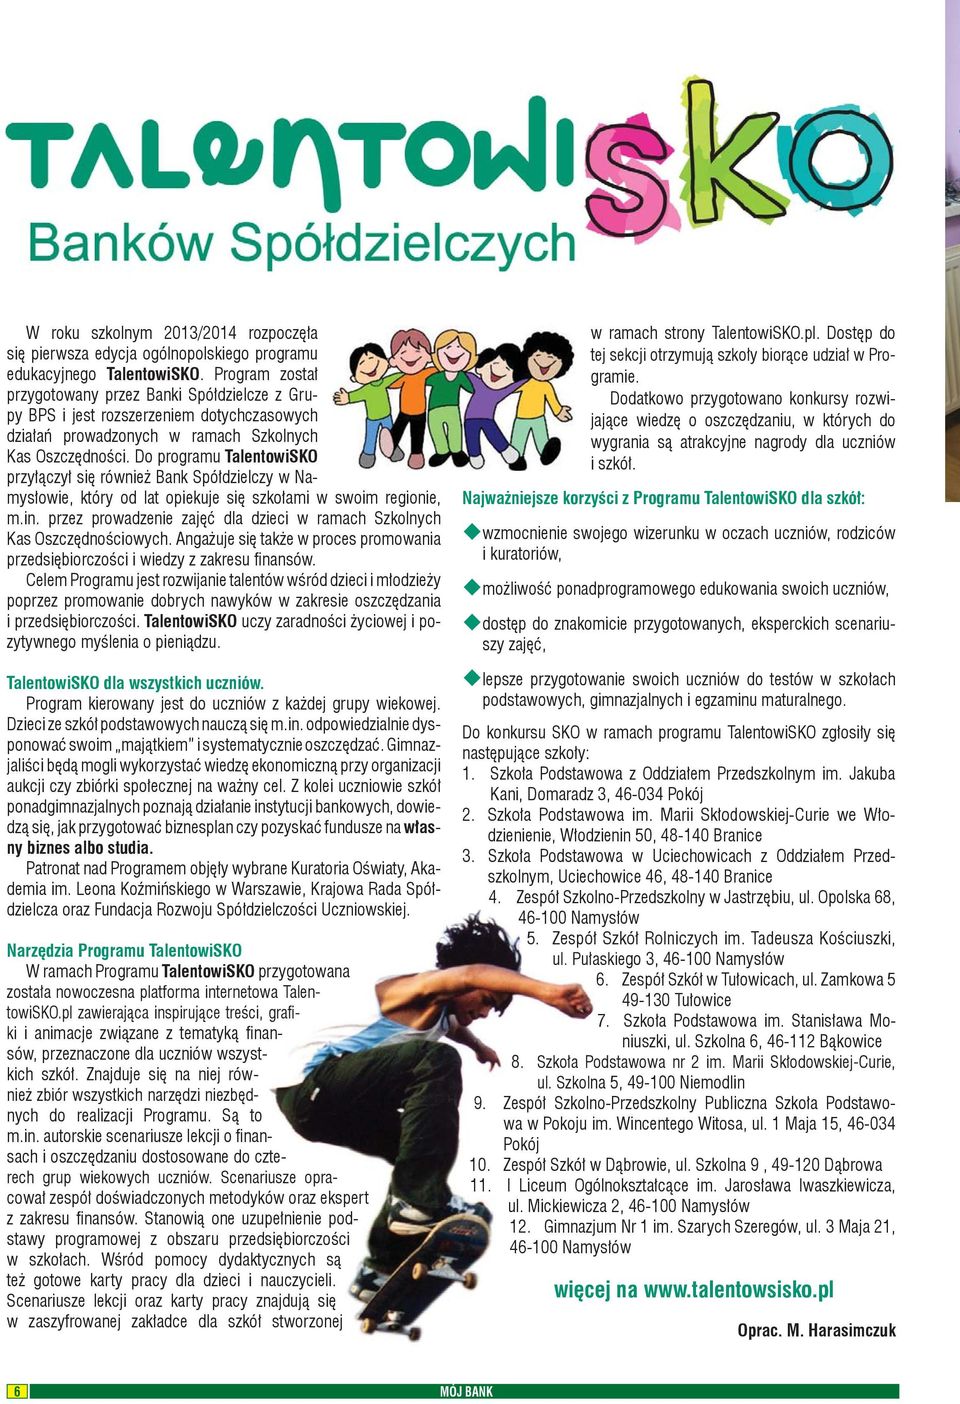 Do programu TalentowiSKO przyłączył się również Bank Spółdzielczy w Namysłowie, który od lat opiekuje się szkołami w swoim regionie, m.in.